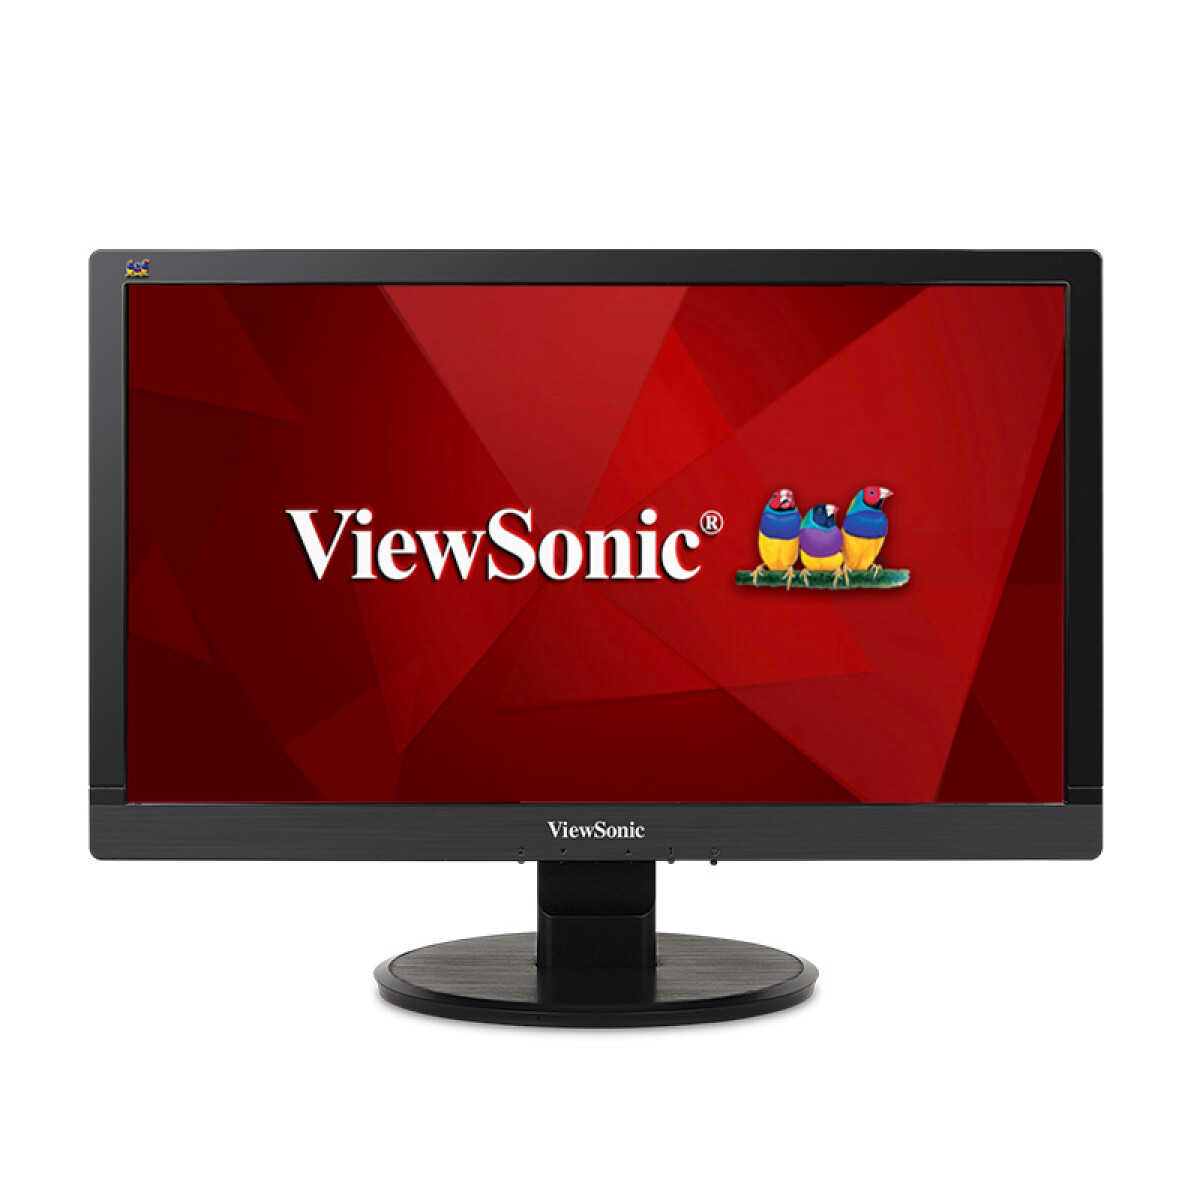 Monitor Viewsonic 20" LED LCD blacklight VGA-DVI - Unica 